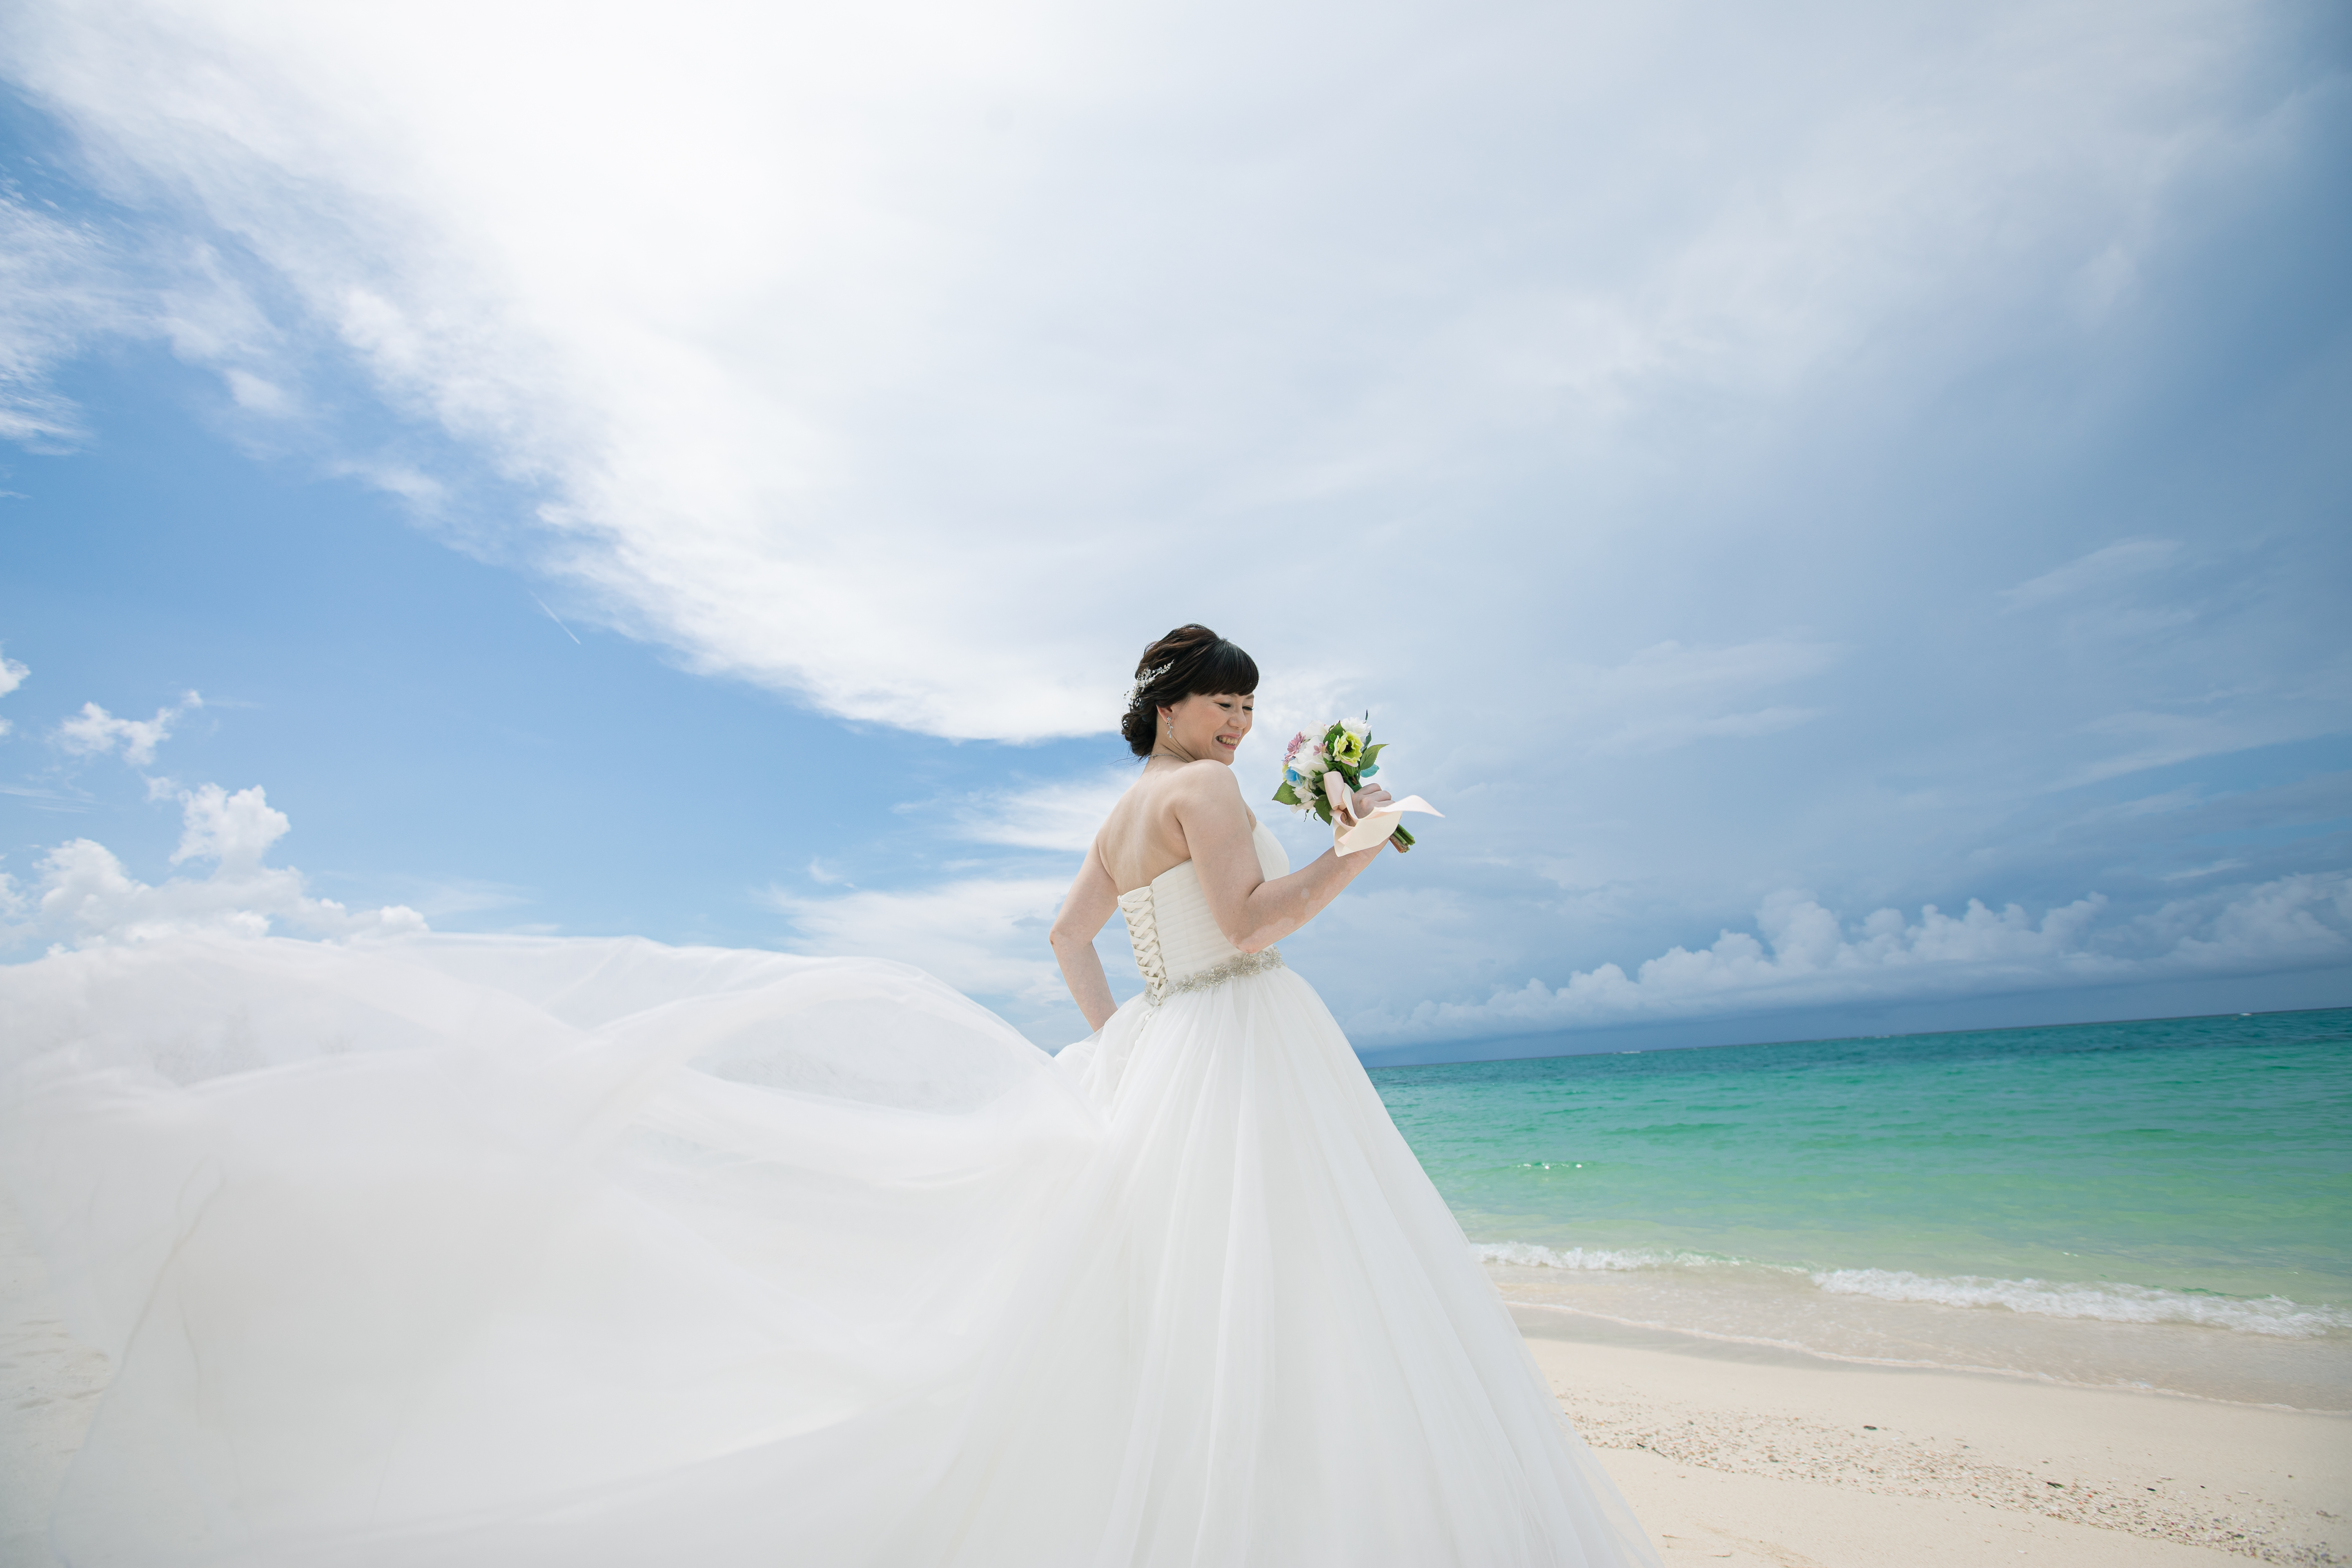 沖縄フォトウェディング チャペル ビーチ撮影 9月10日 フォトウェディング 結婚式の前撮りならクリエイティブスタジオ